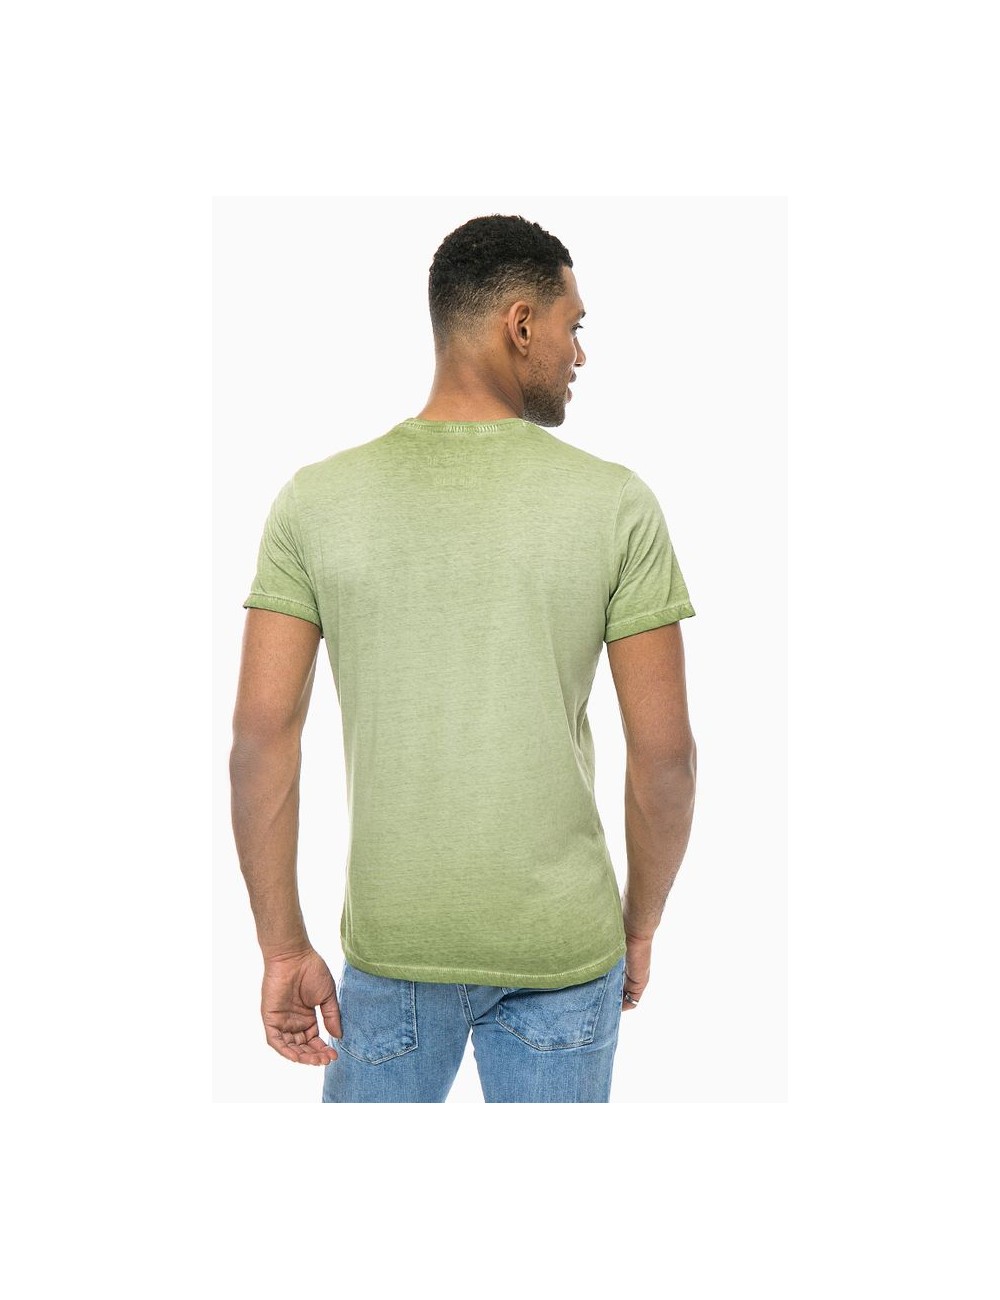 Pepe traperice zeleni muki majica